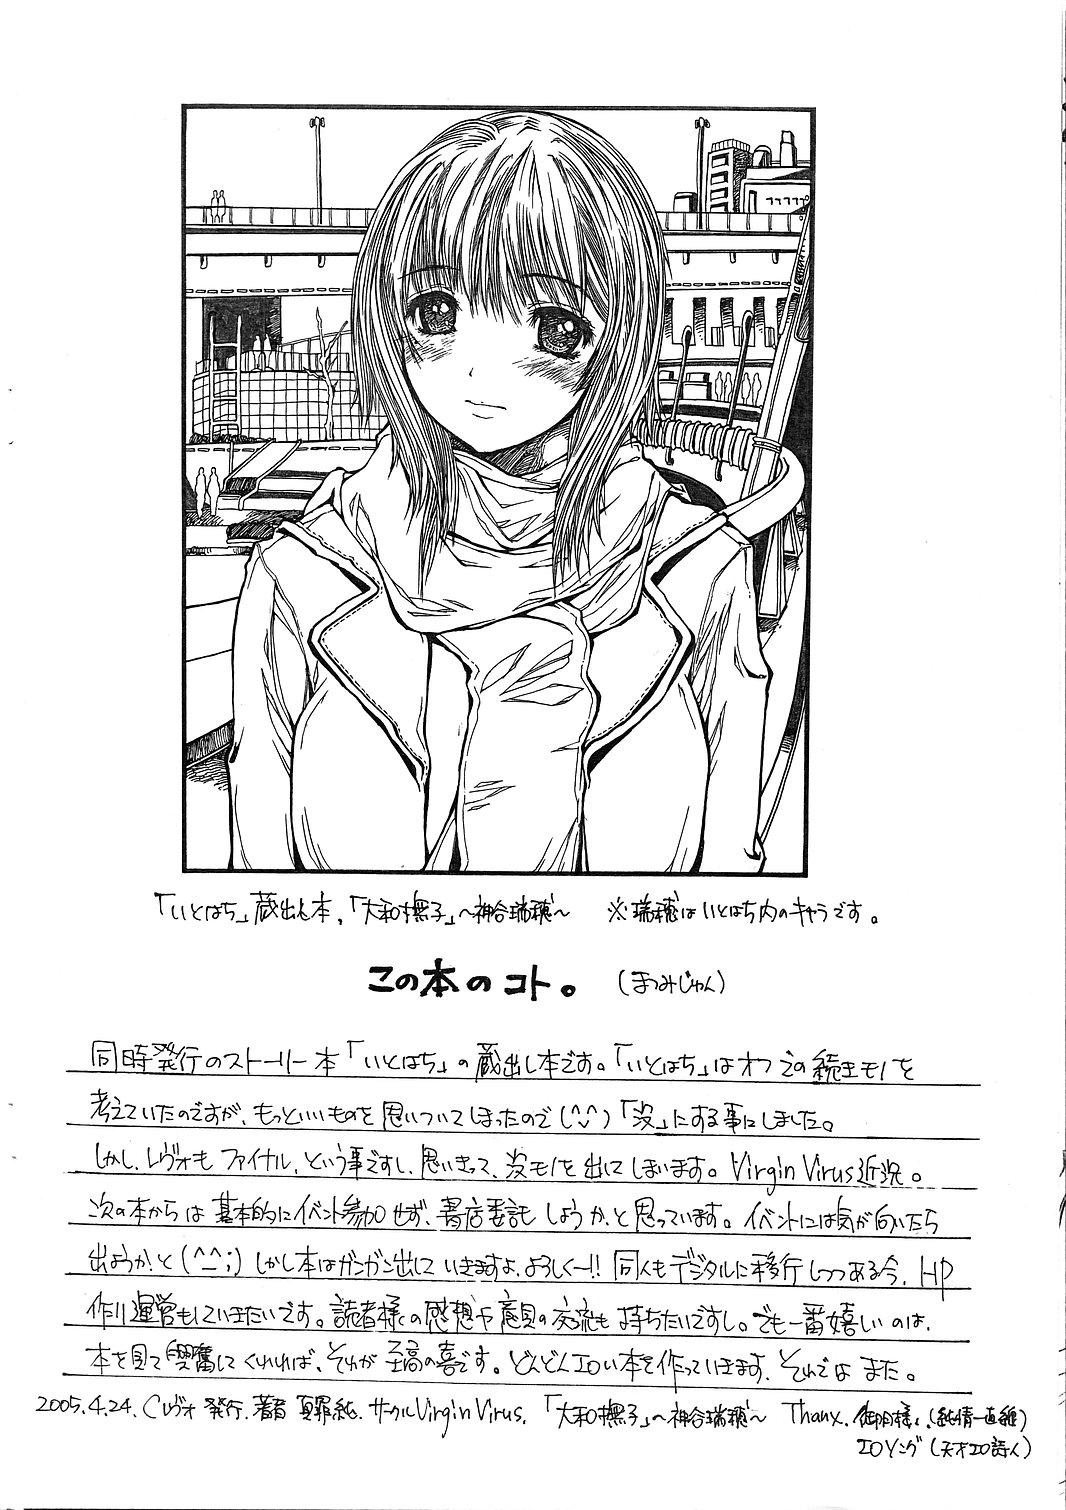 Foreskin Yamato Nadeshiko wo Omoikkiri Kegashitai! Teenage Sex - Page 2